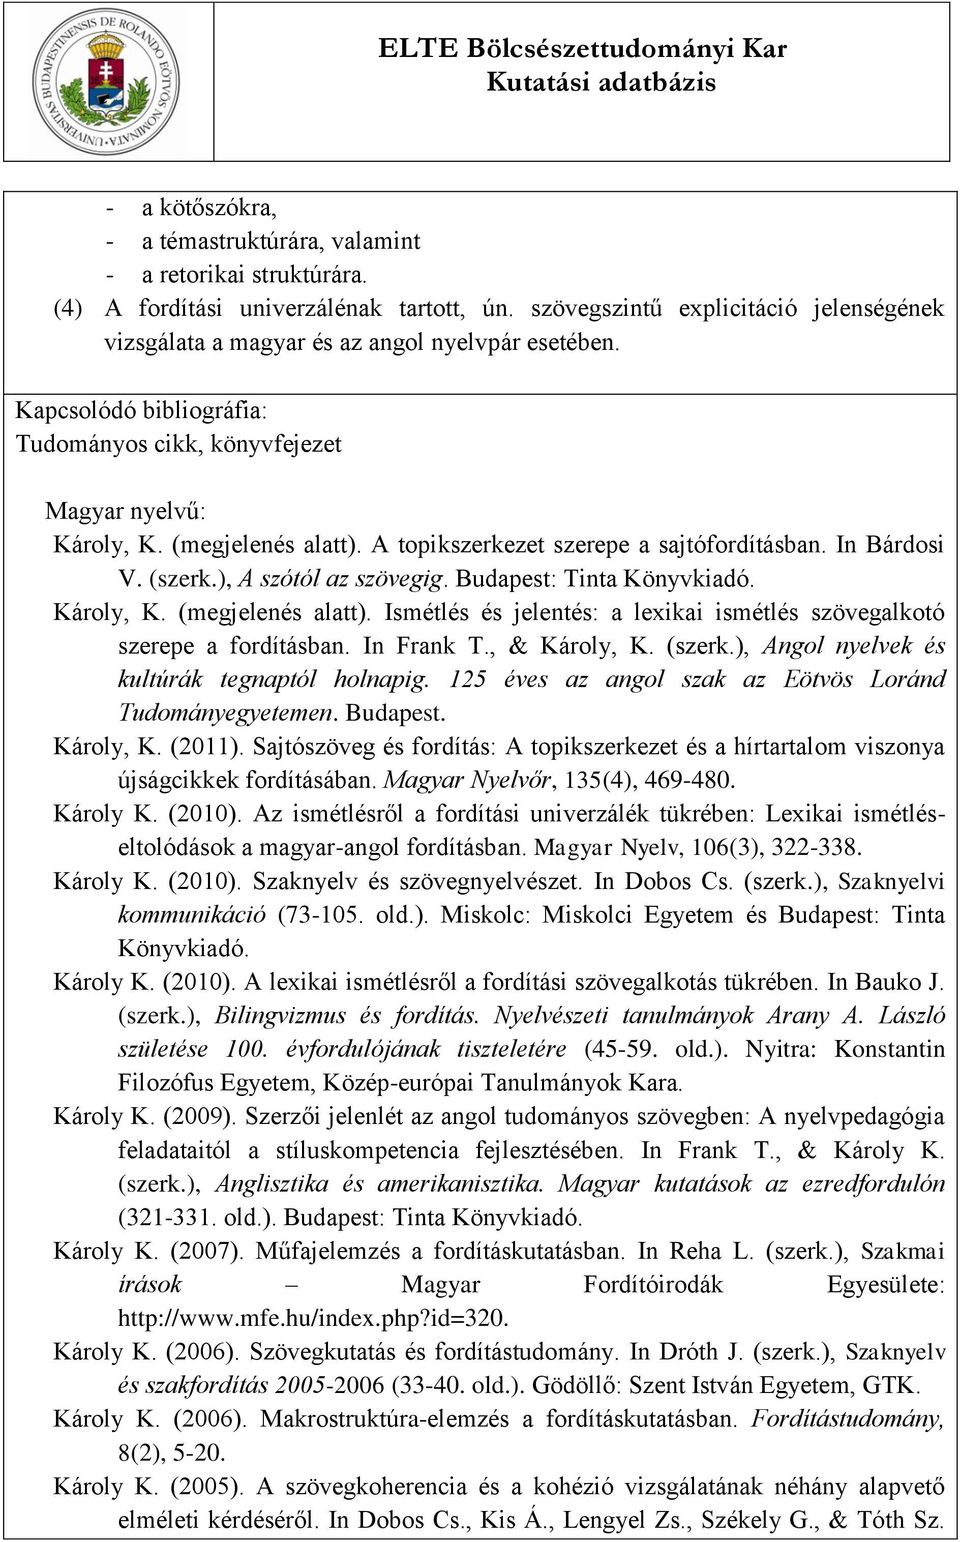 A topikszerkezet szerepe a sajtófordításban. In Bárdosi V. (szerk.), A szótól az szövegig. Budapest: Tinta Könyvkiadó. Károly, K. (megjelenés alatt).